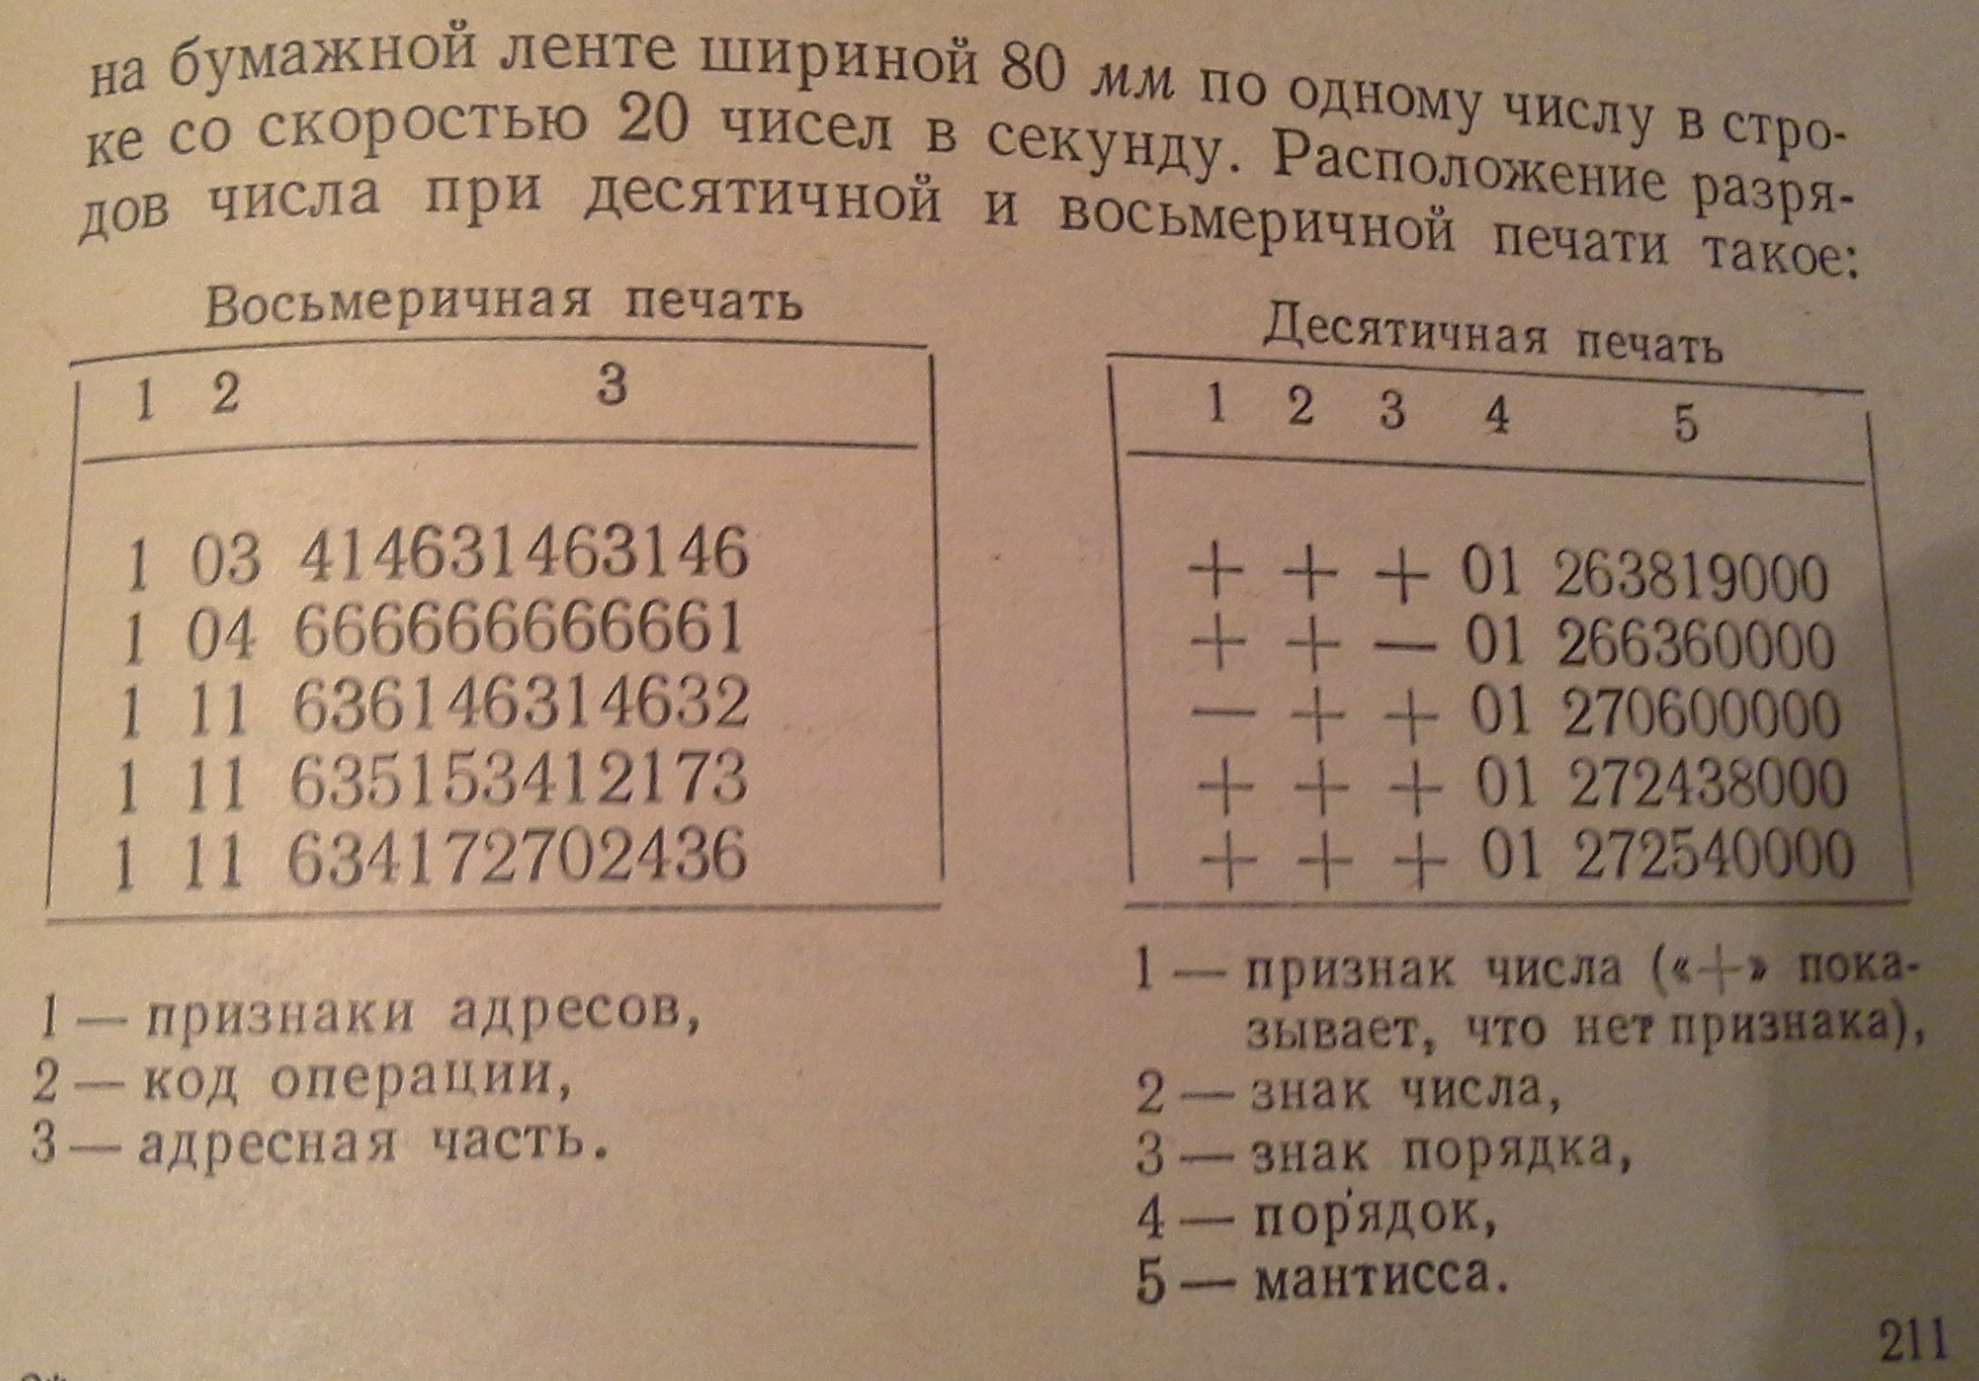 М-20. Печать восьмеричная и десятичная. 1967